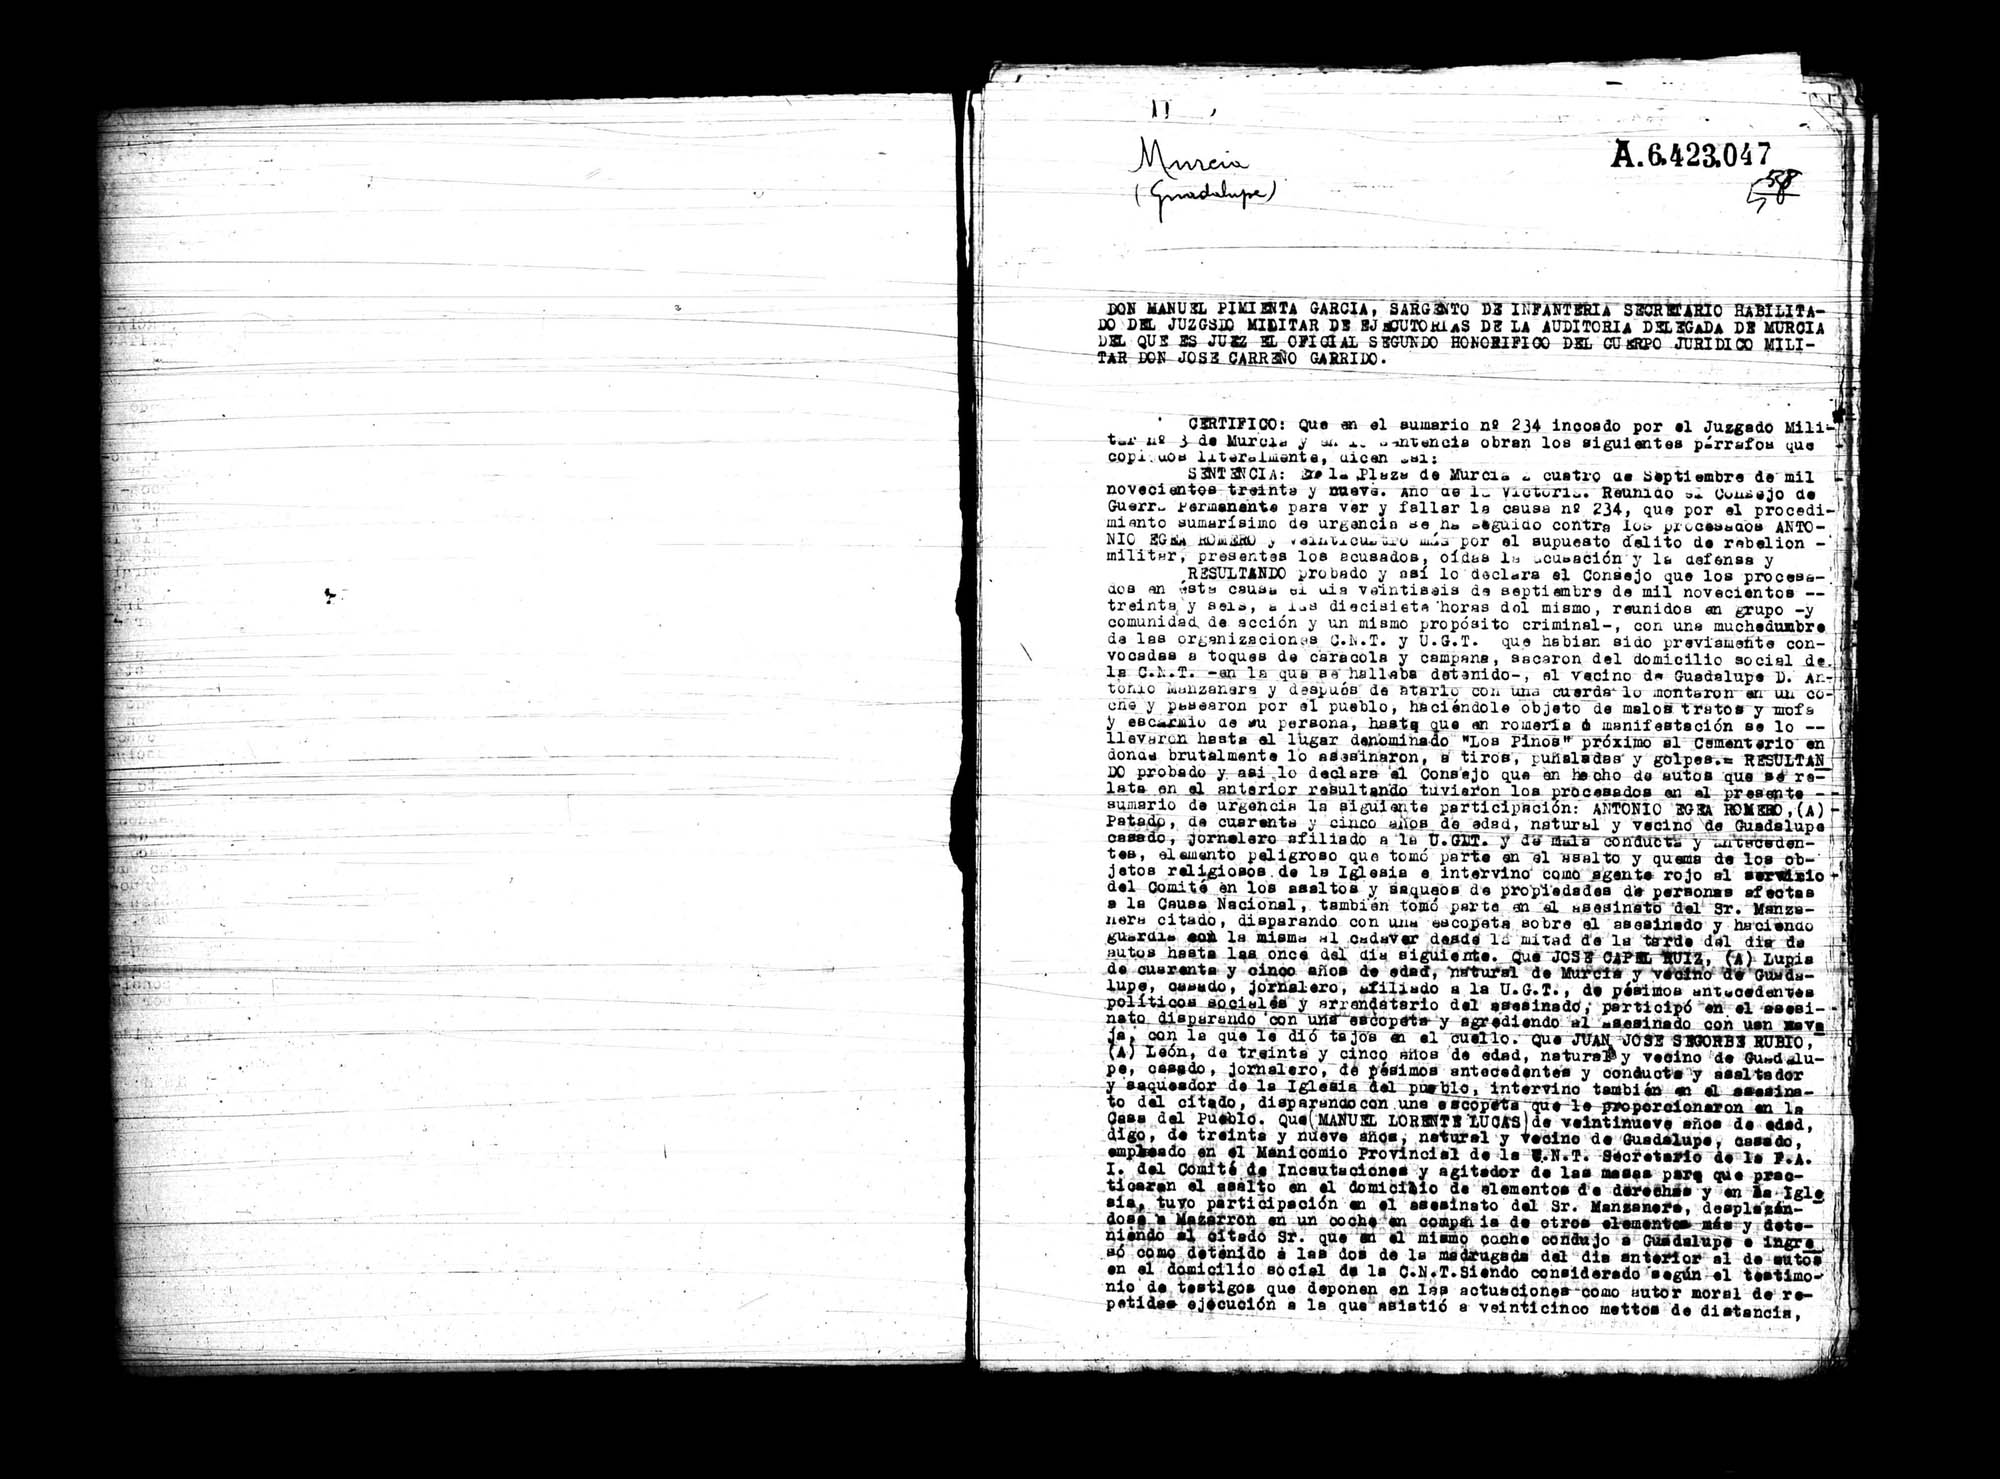 Certificado de la sentencia pronunciada contra Antonio Egea Romero y varios reos más, causa 234, el 4 de septiembre de 1939 en Murcia.